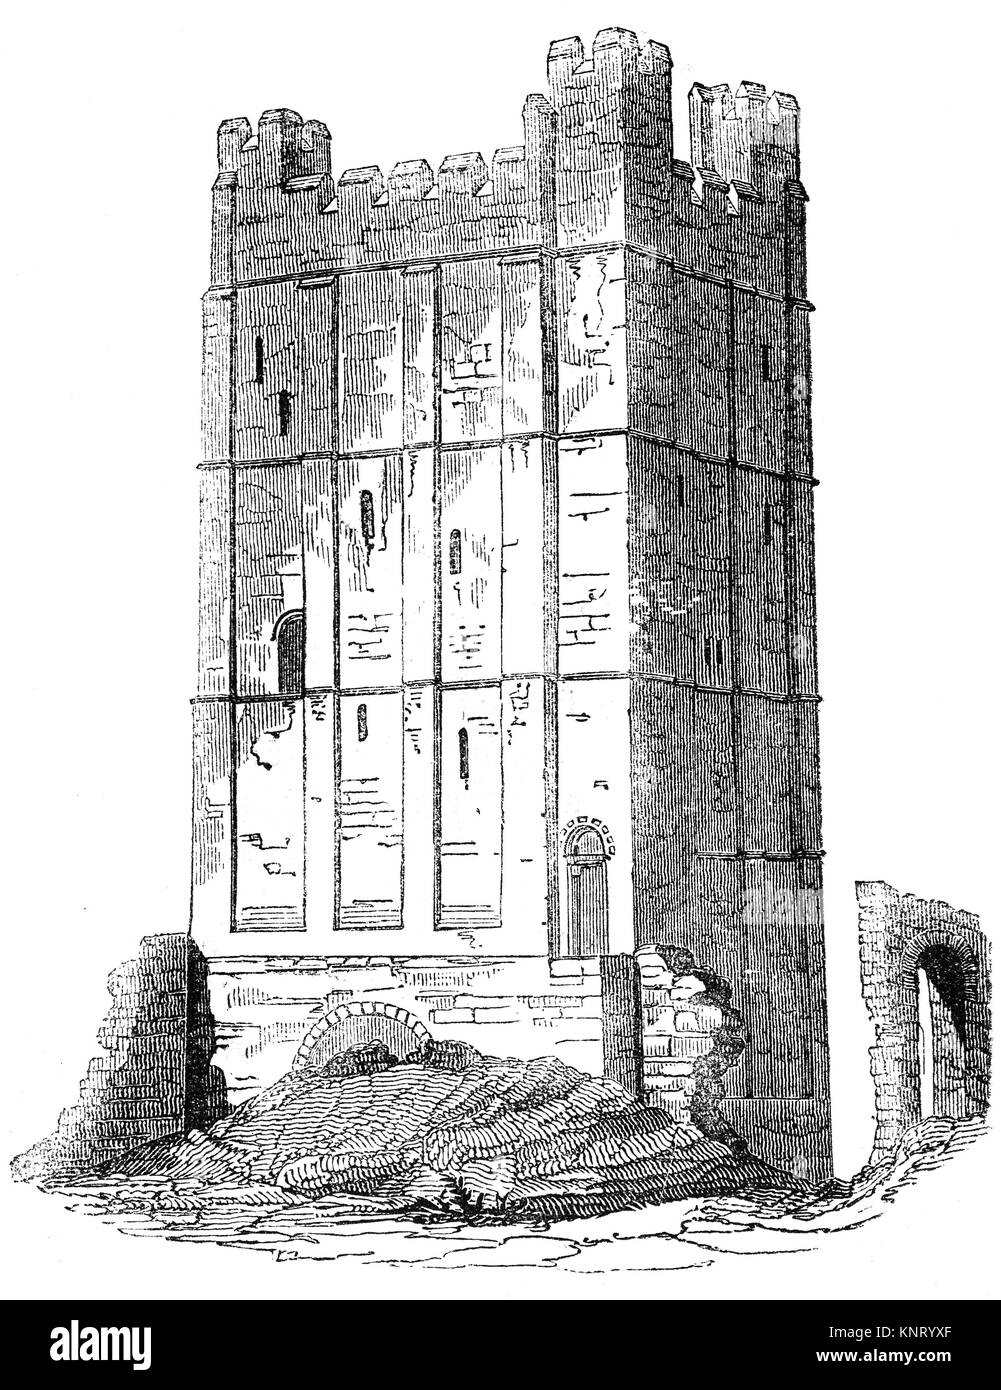 Le donjon du château de Richmond, achevé en 1086, dans la ville de marché de Richmond fondée en 1071 par le Breton Alan Rufus, sur les terres qui lui ont été octroyées par Guillaume le Conquérant. North Yorkshire, Angleterre. Banque D'Images